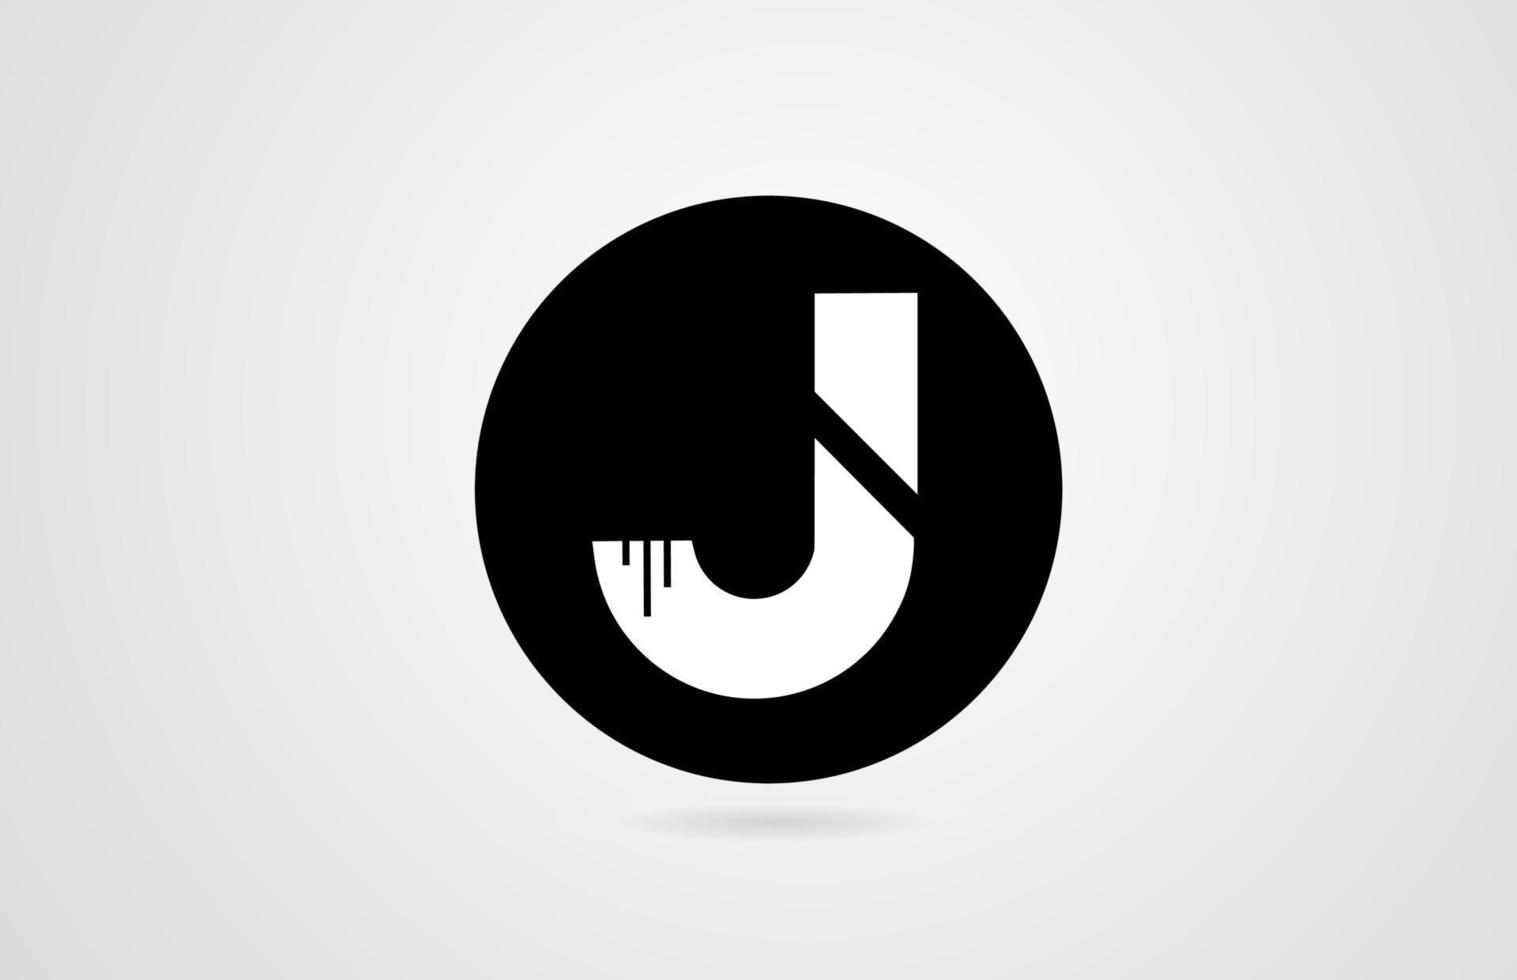 j blanco letra del alfabeto círculo negro empresa empresa logo icono diseño corporativo vector